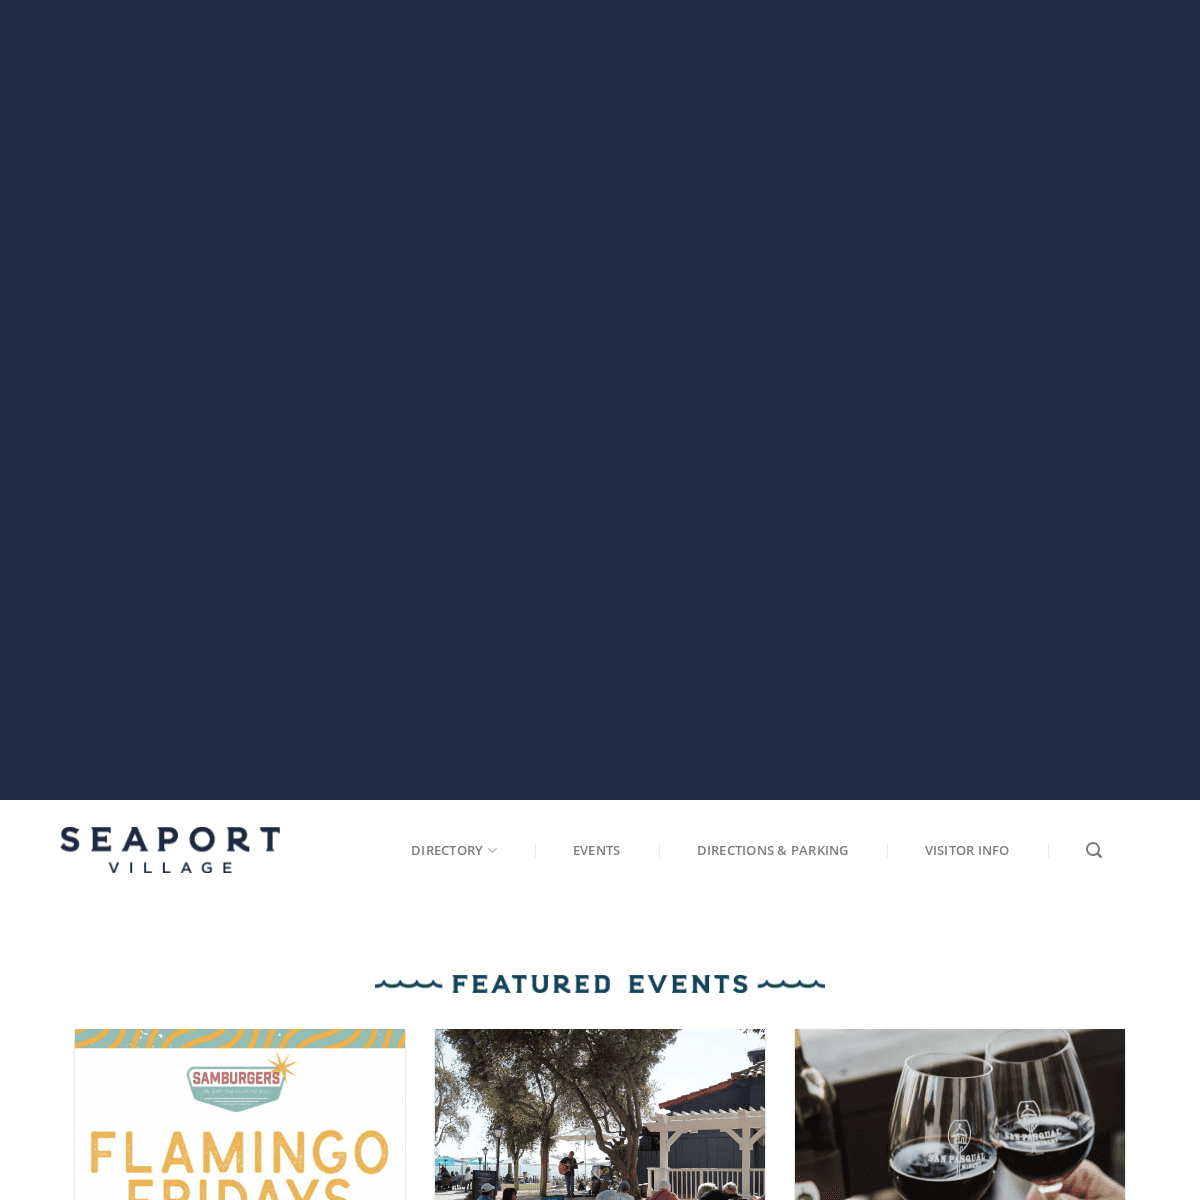 A complete backup of https://seaportvillage.com